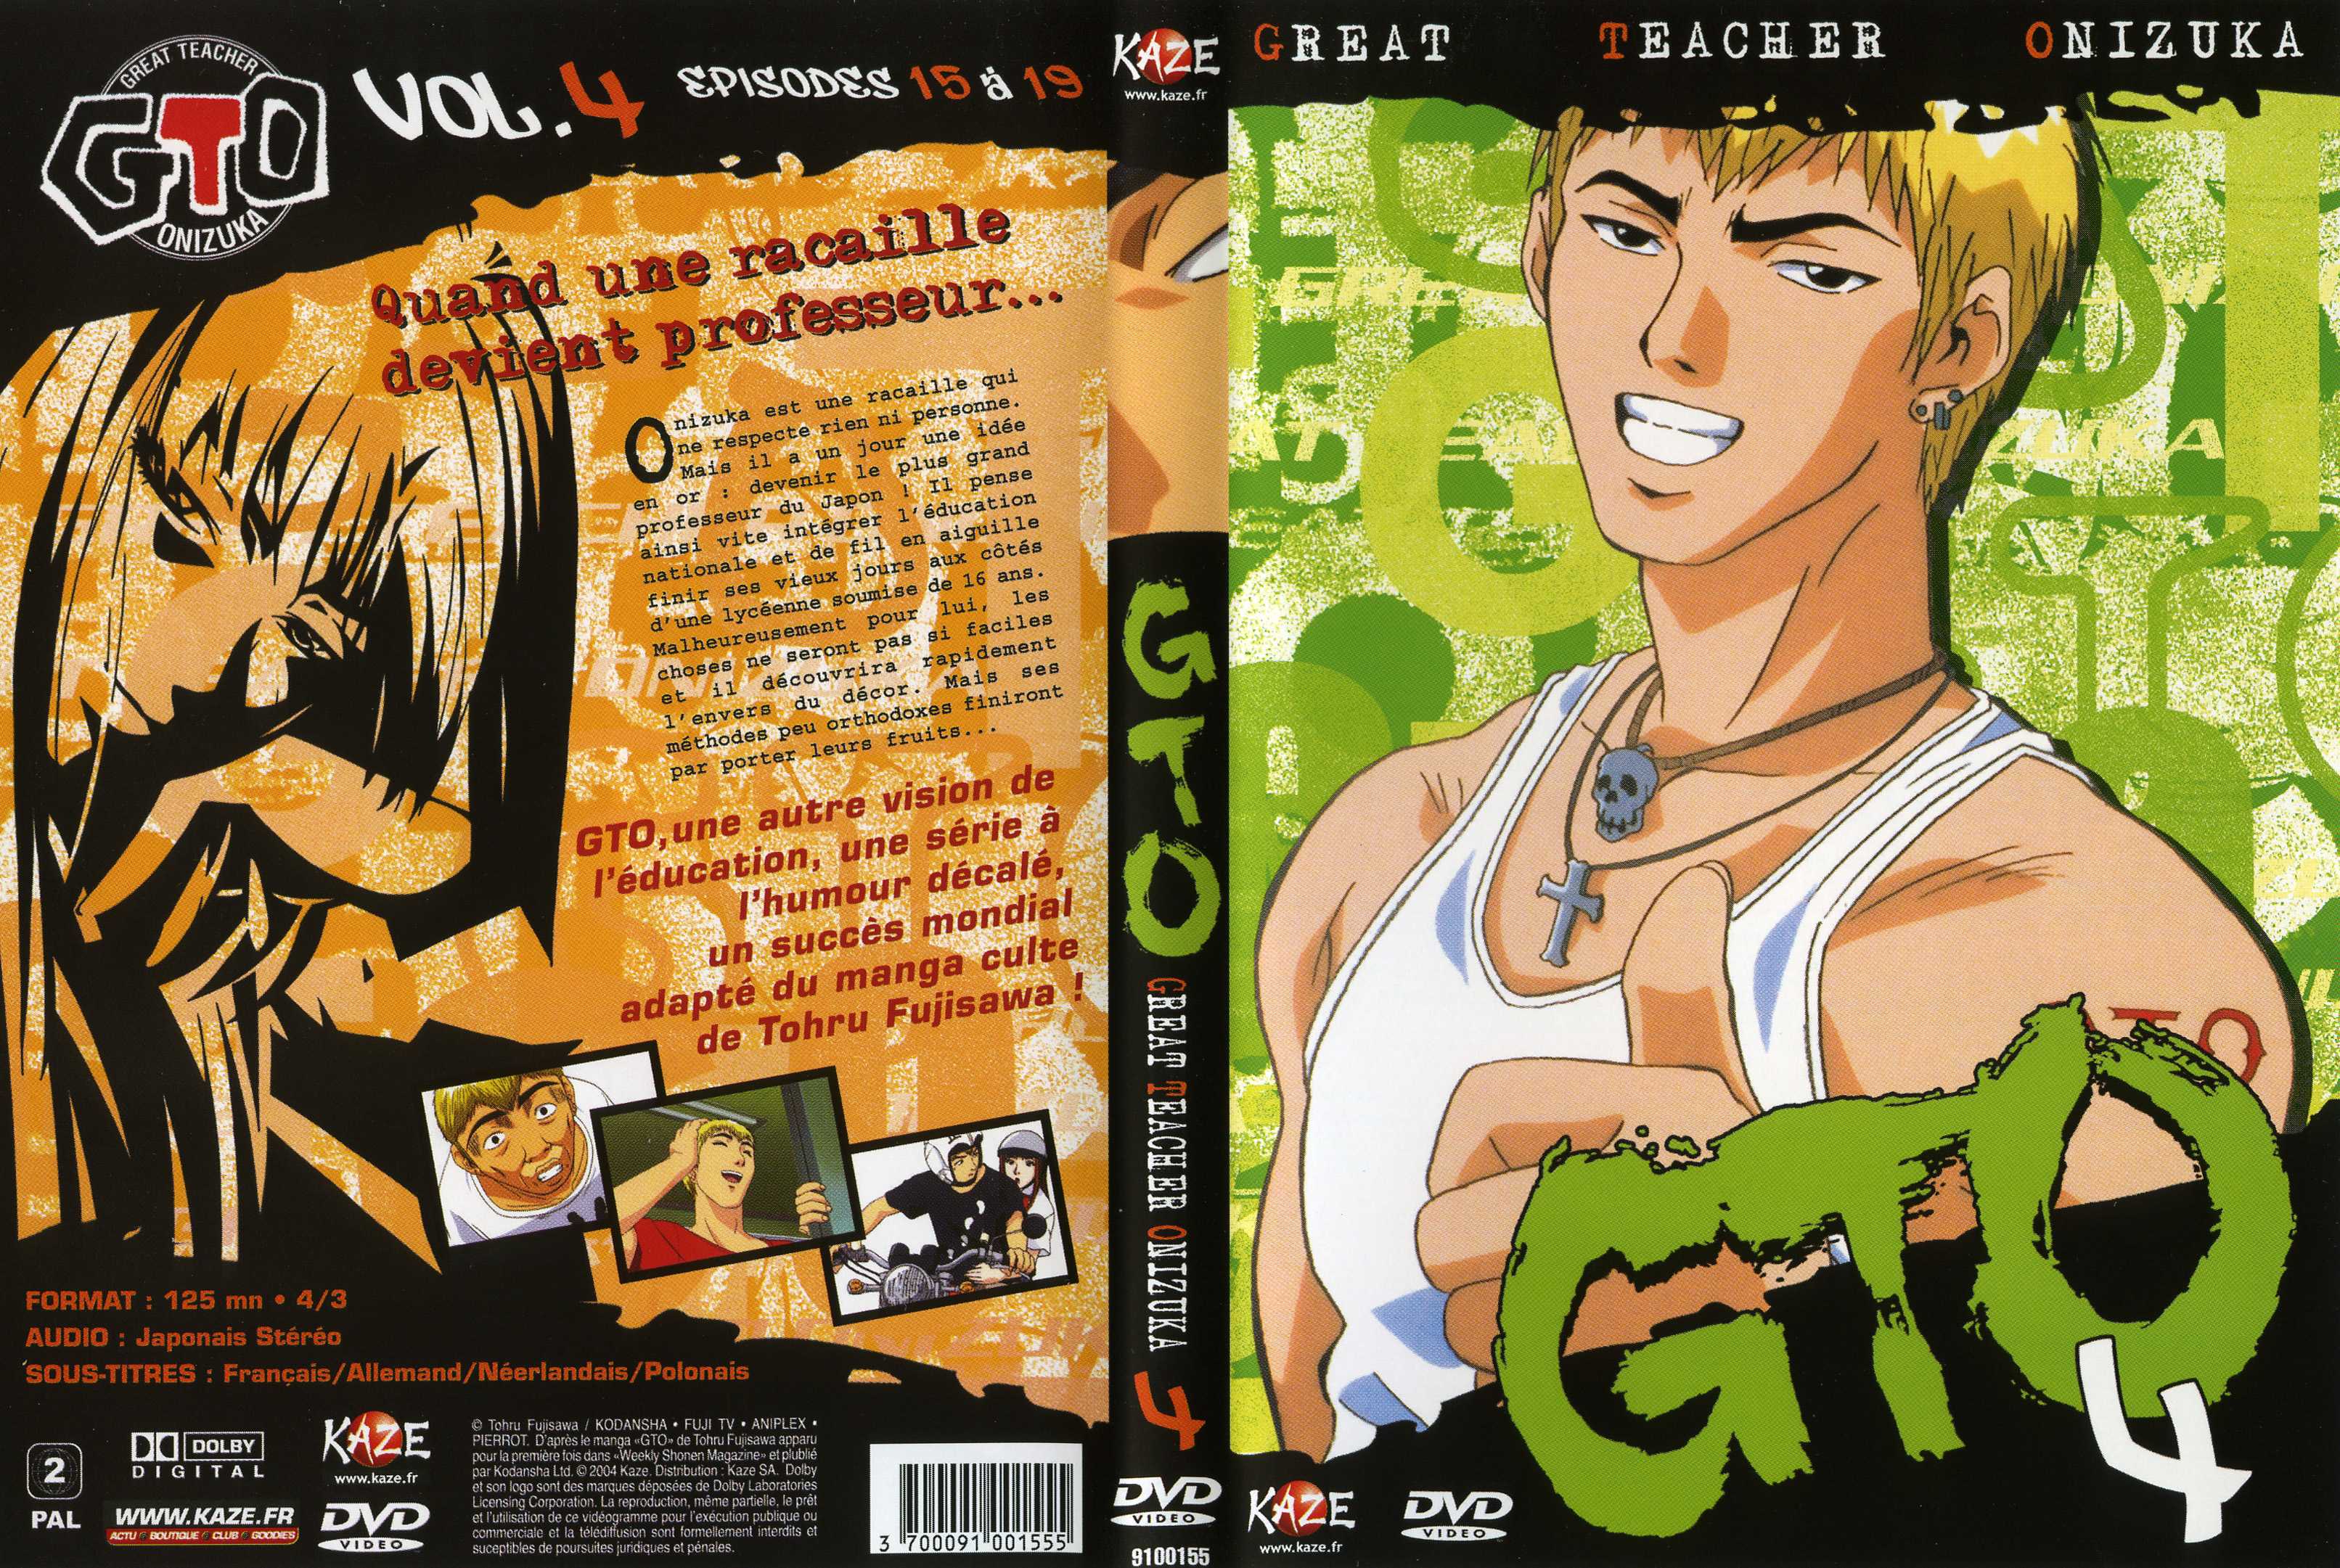 Jaquette DVD GTO vol 04